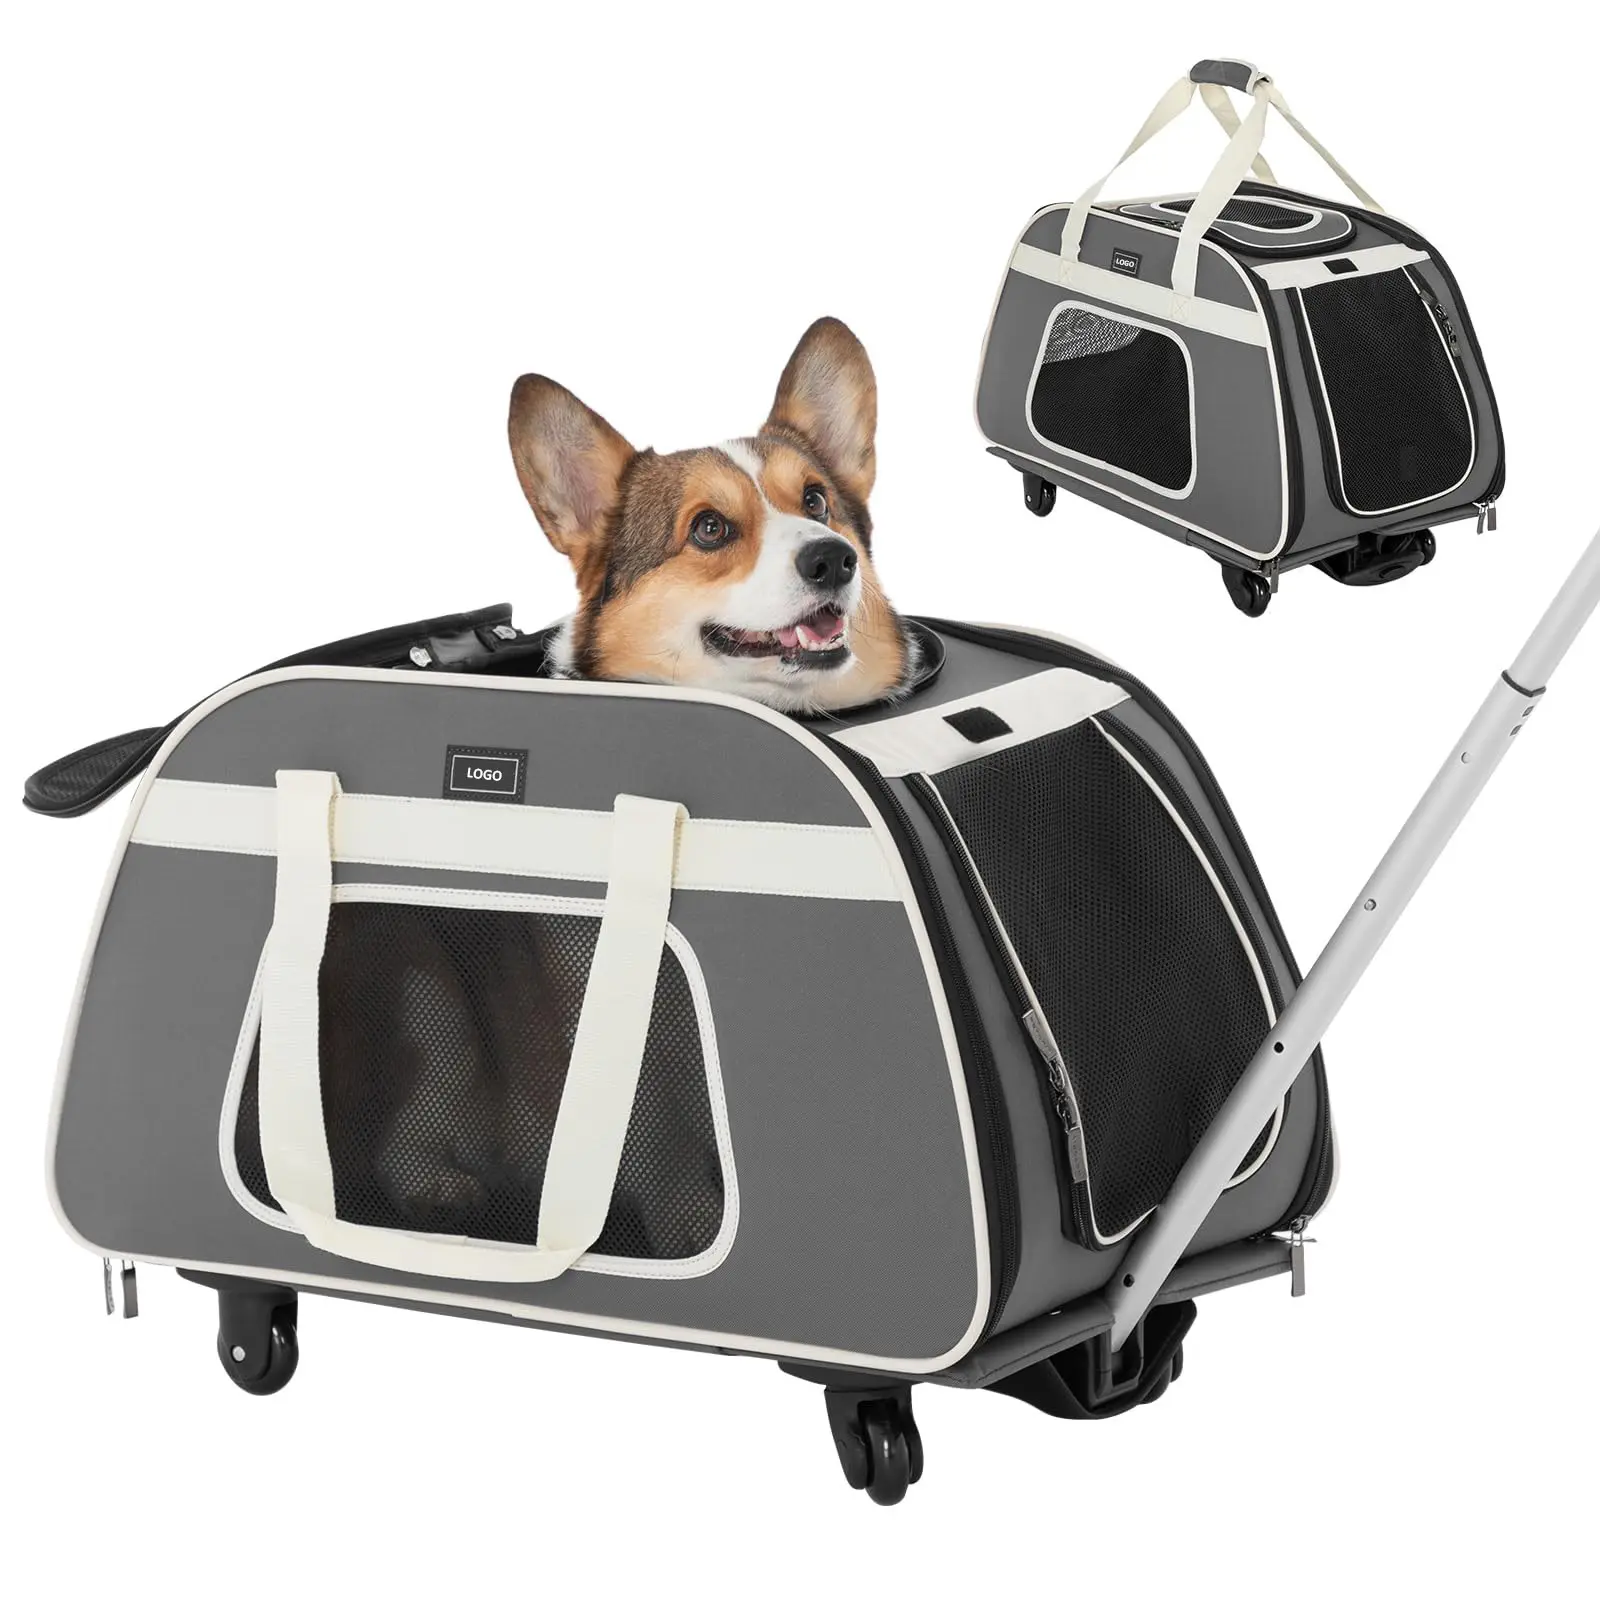 Transporteur de chien de compagnie de quantité minimale de commande bas sur mesure pour chiens de taille moyenne sac de transport de voyage grand chat transporteur extérieur Portable